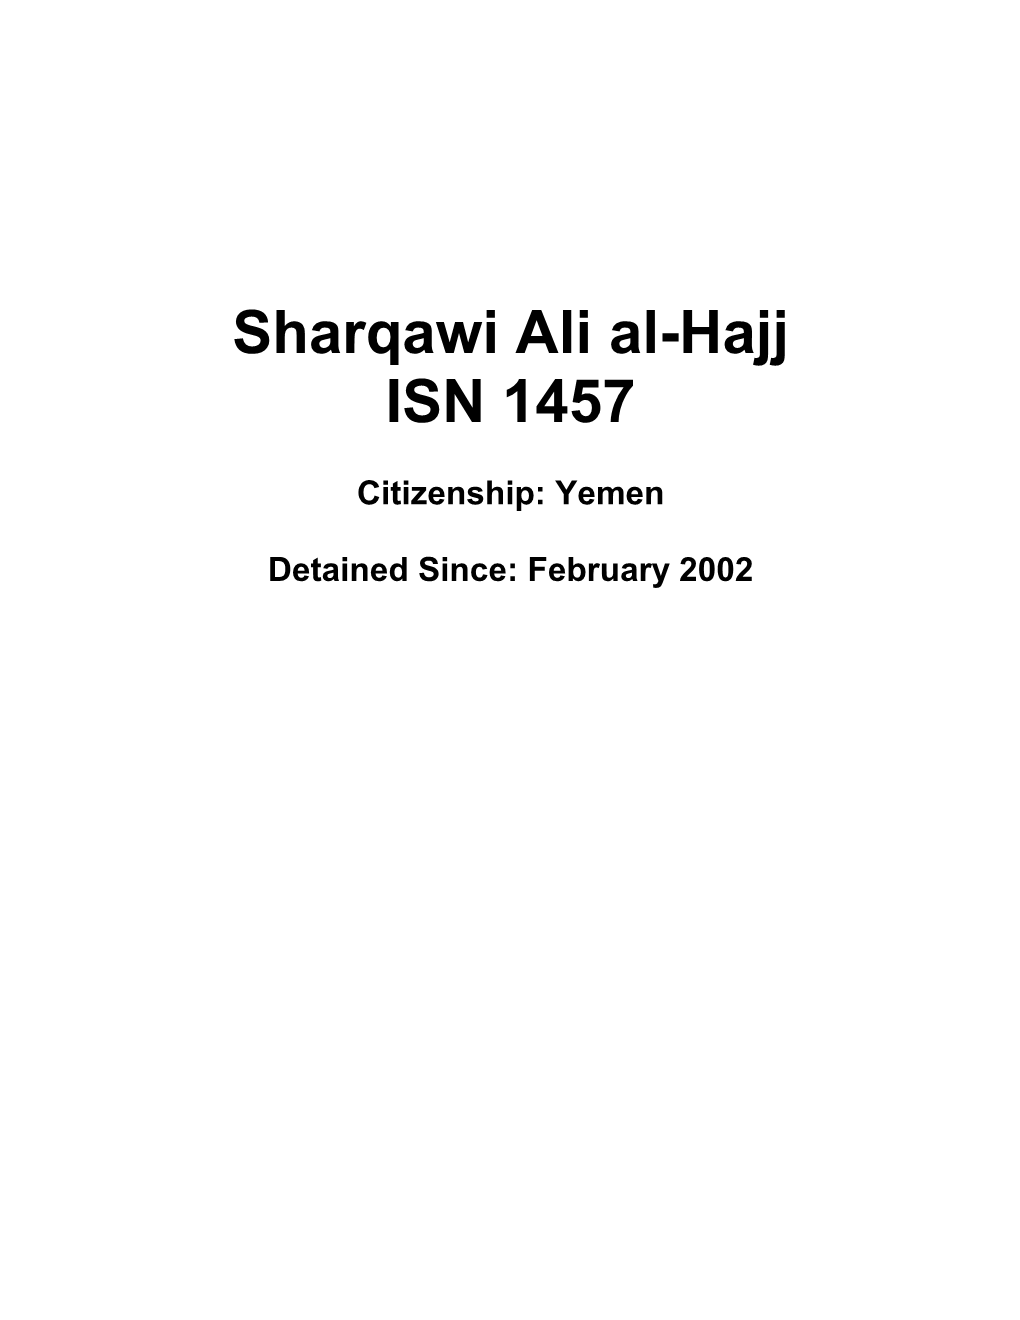 Sharqawi Abdu Ali Al Hajj, Civil Action No 09-745 (RCL), June 8, 2011